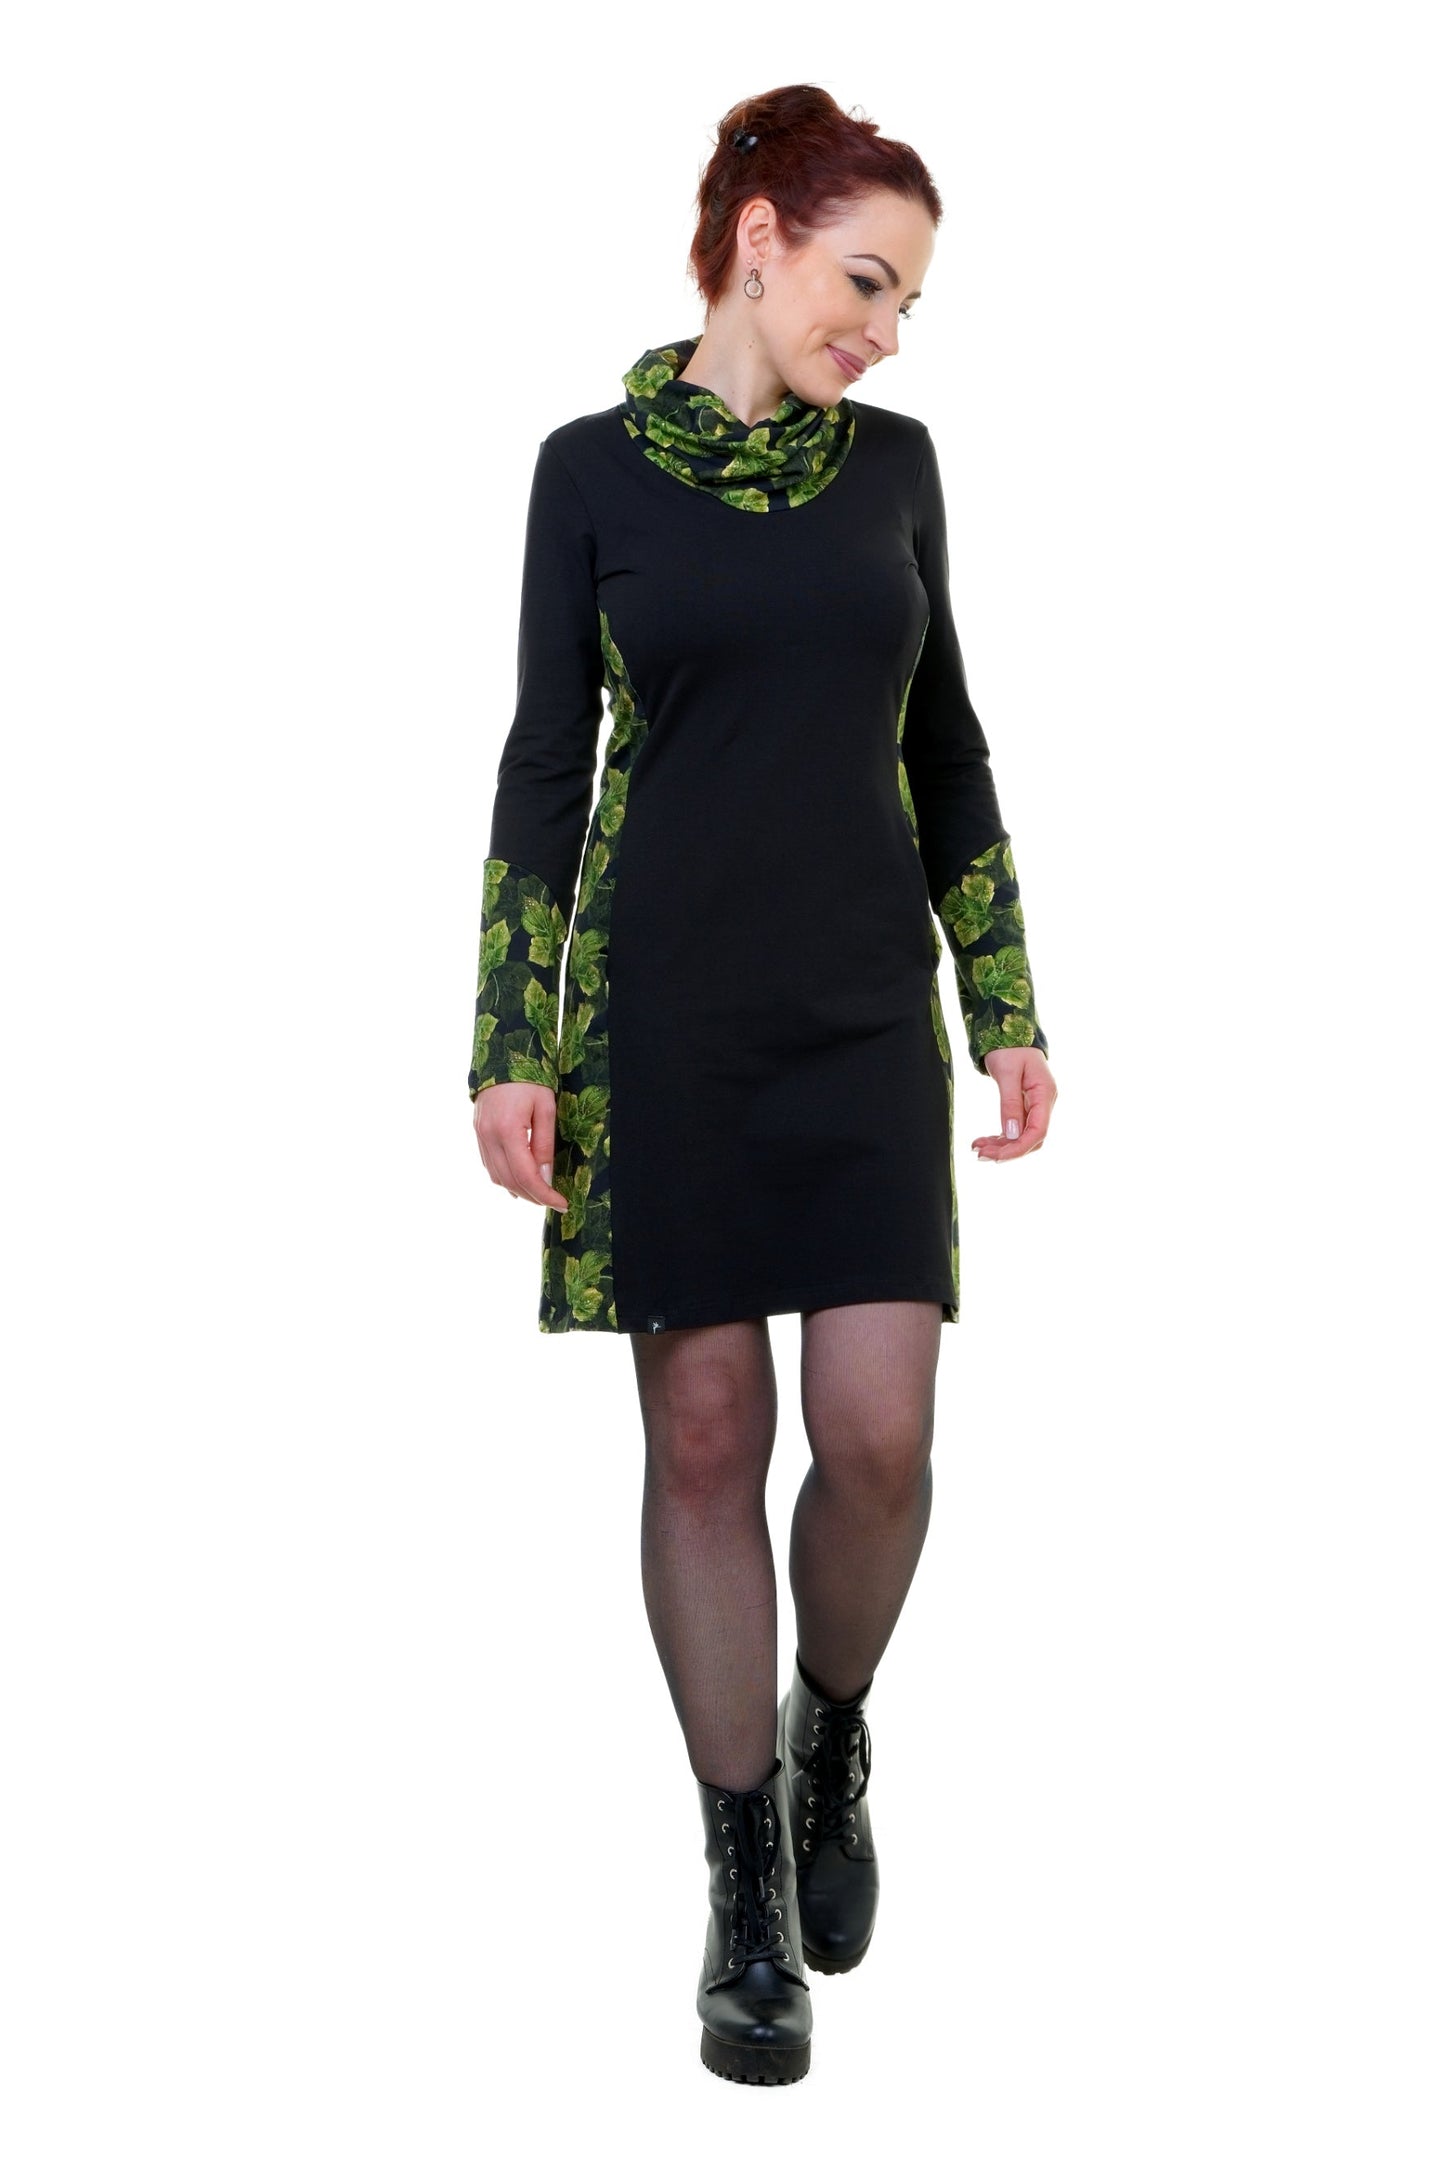 SALE Größe 3XL Herbstkönigin Kleid schwarz blattzauber